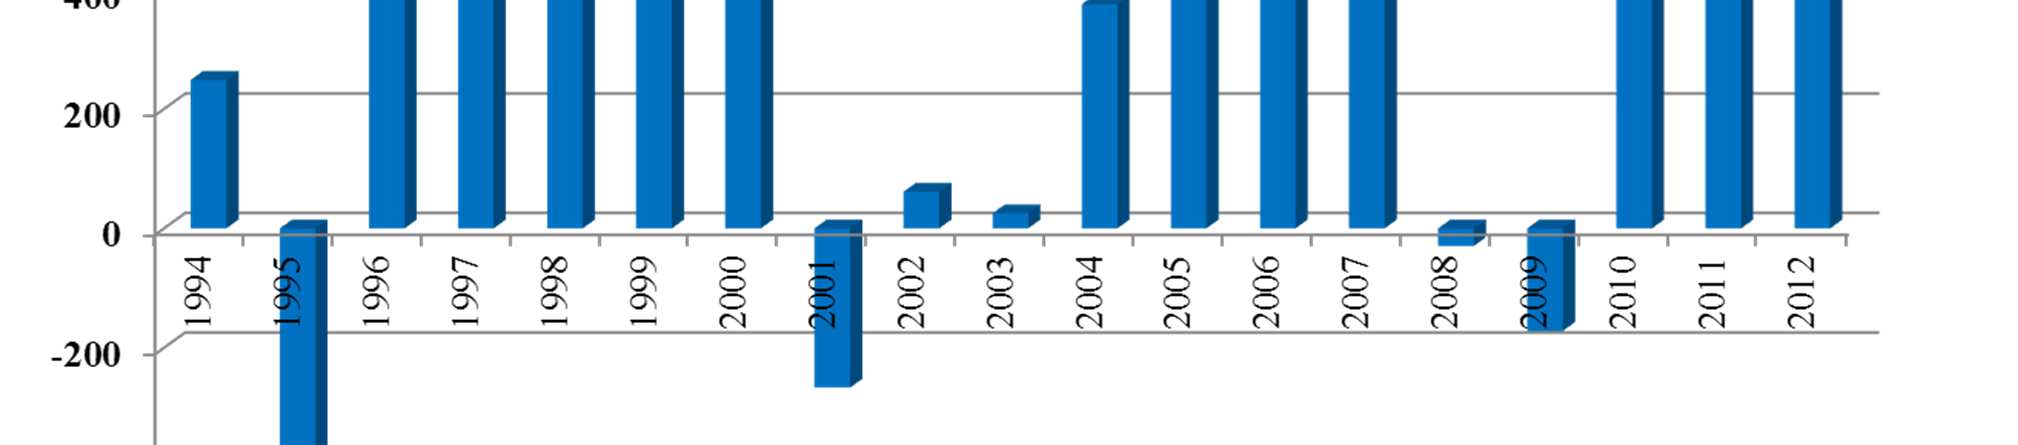 Crecimiento del empleo formal neto para cada año, 1994-2012 Miles de